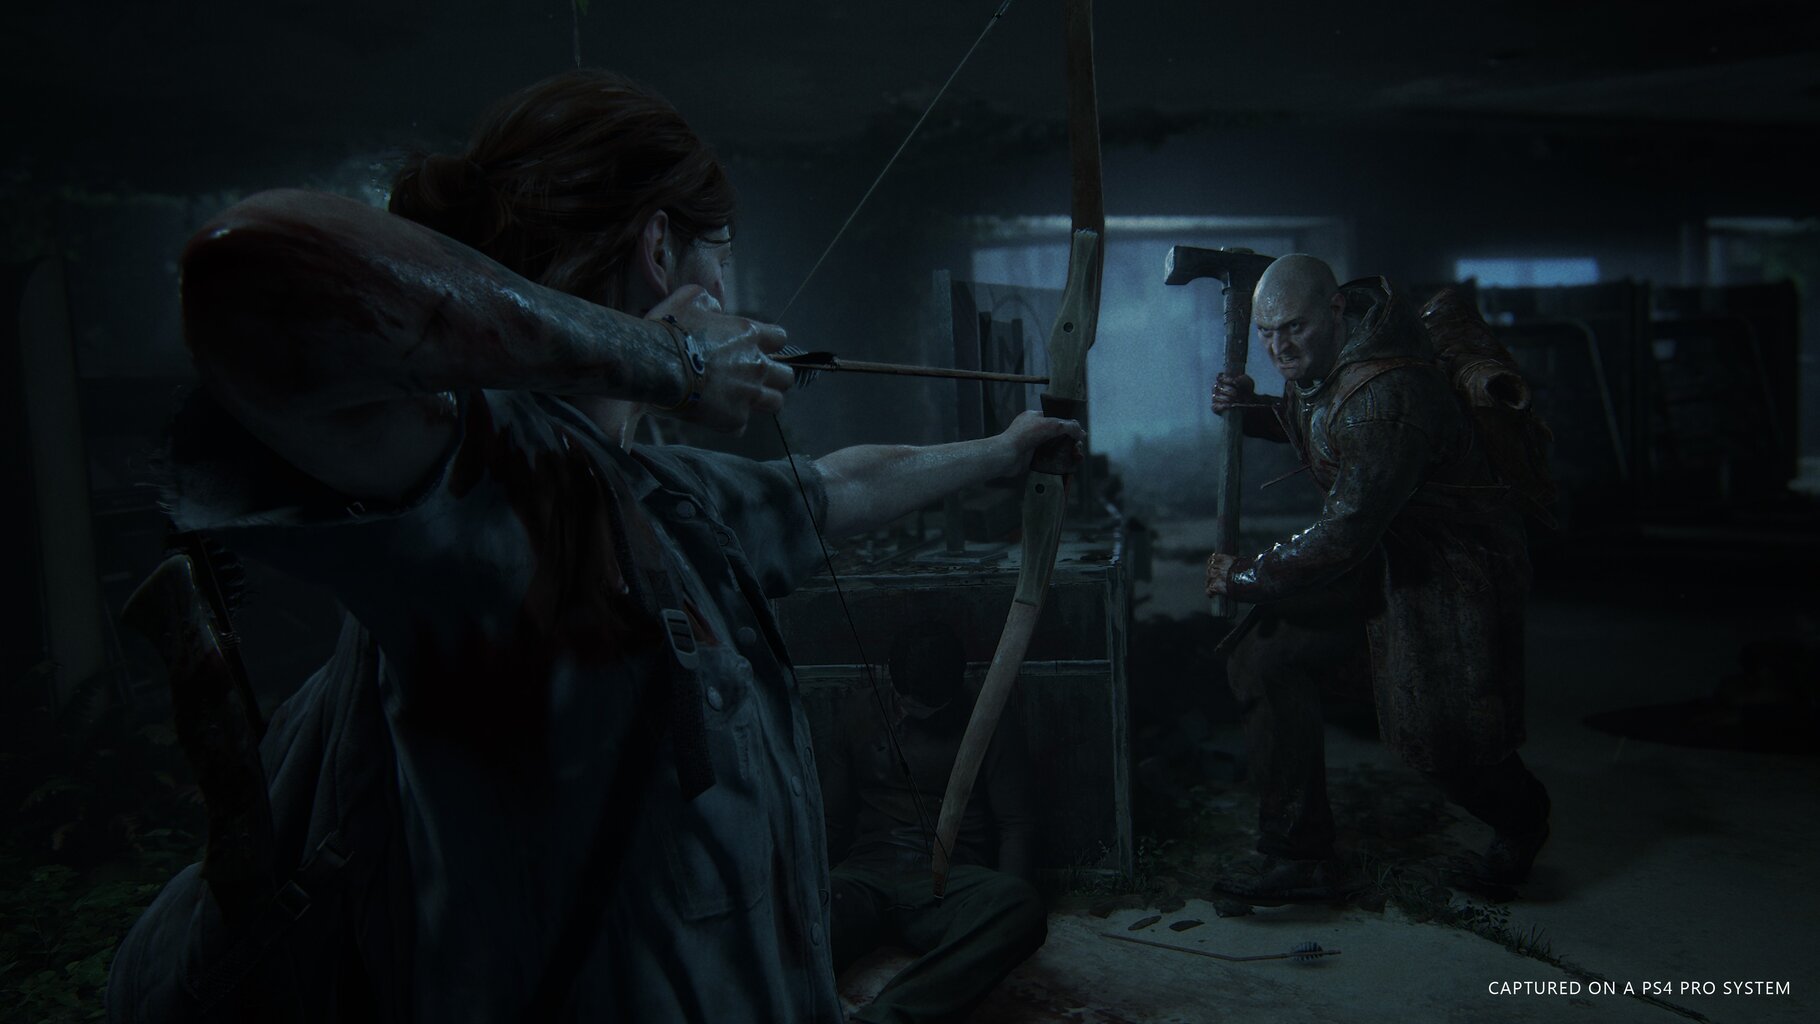 The Last of Us Part II, PS4 kaina ir informacija | Kompiuteriniai žaidimai | pigu.lt